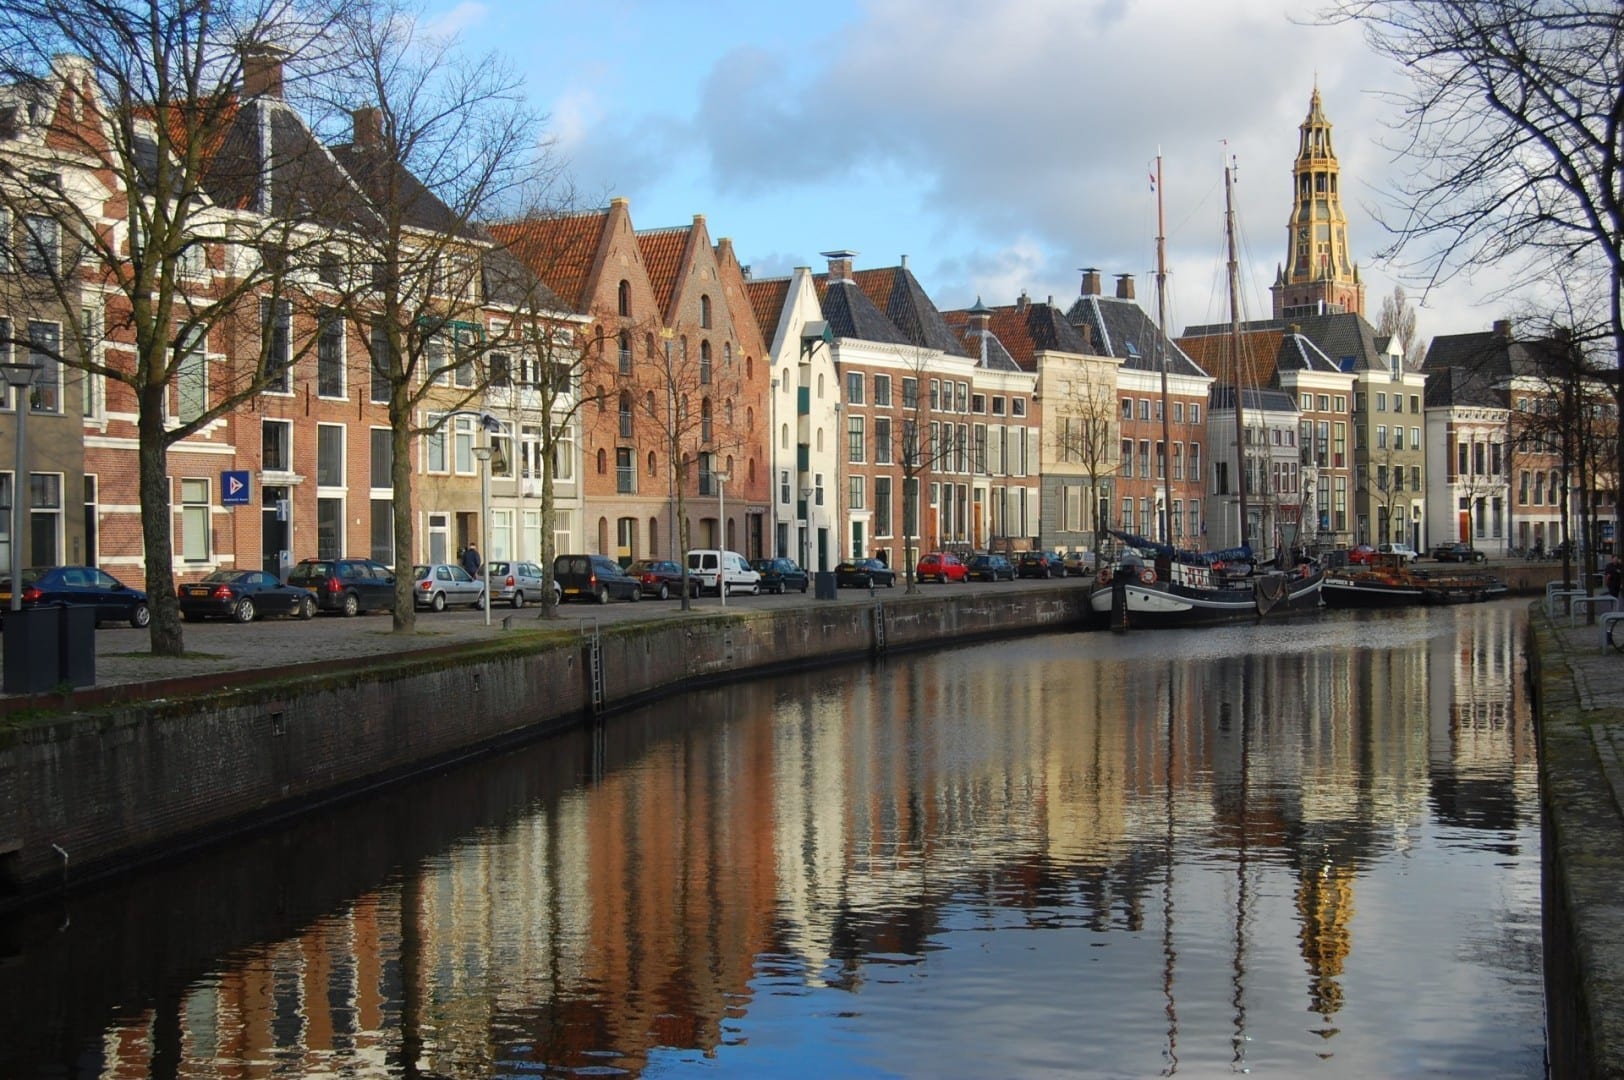 Antiguos almacenes a lo largo del canal de Hoge der Aa. En el fondo, se puede ver la torre del Aa-Kerk. Groninga Países Bajos